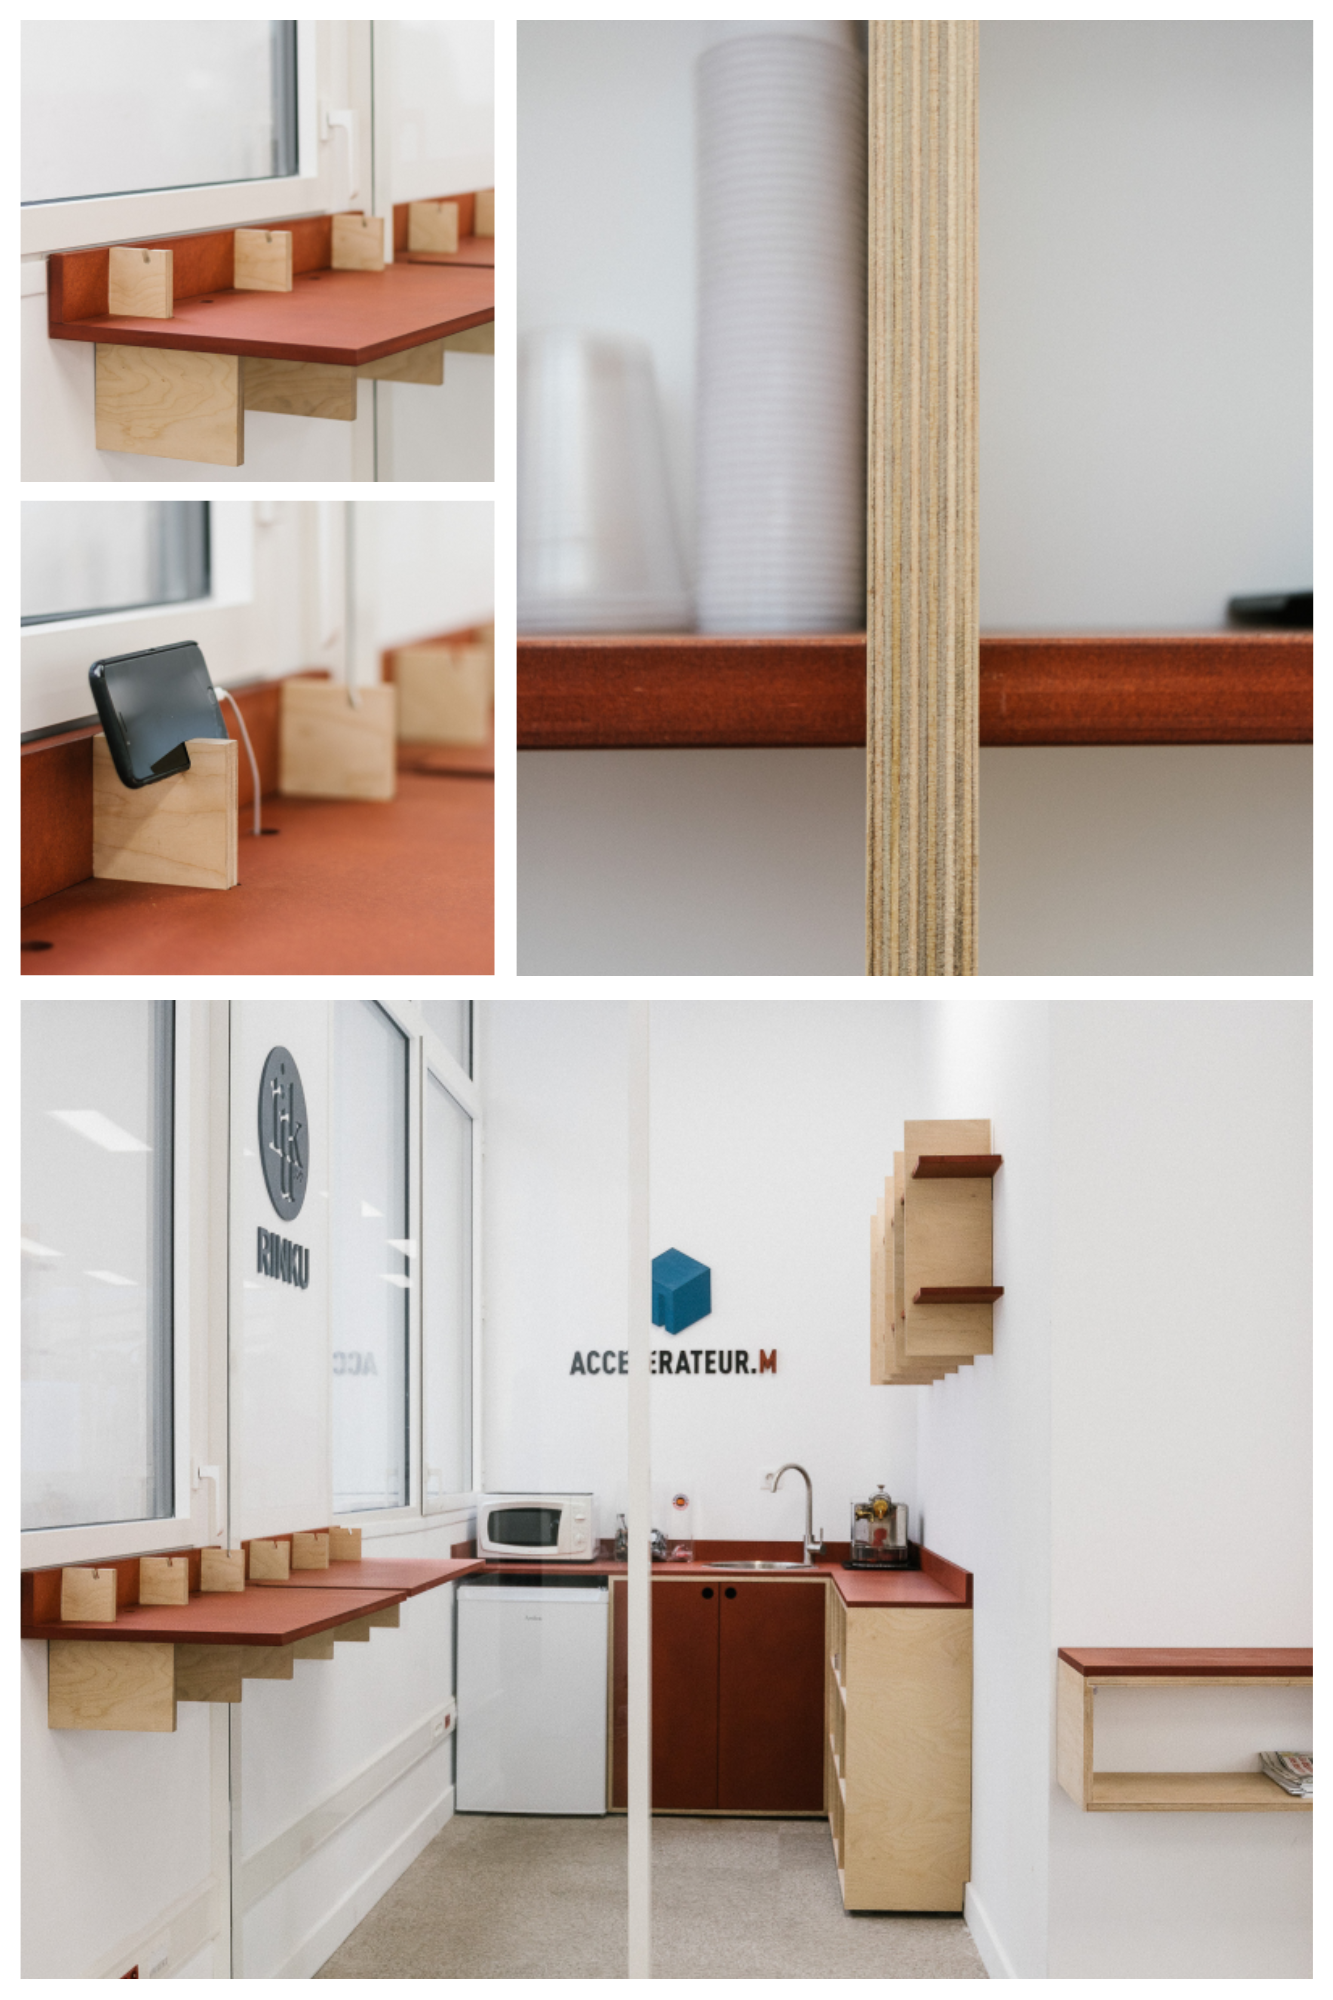 réalisation espace pro par Rinku Design création de mobiliers sur-mesure et agencement